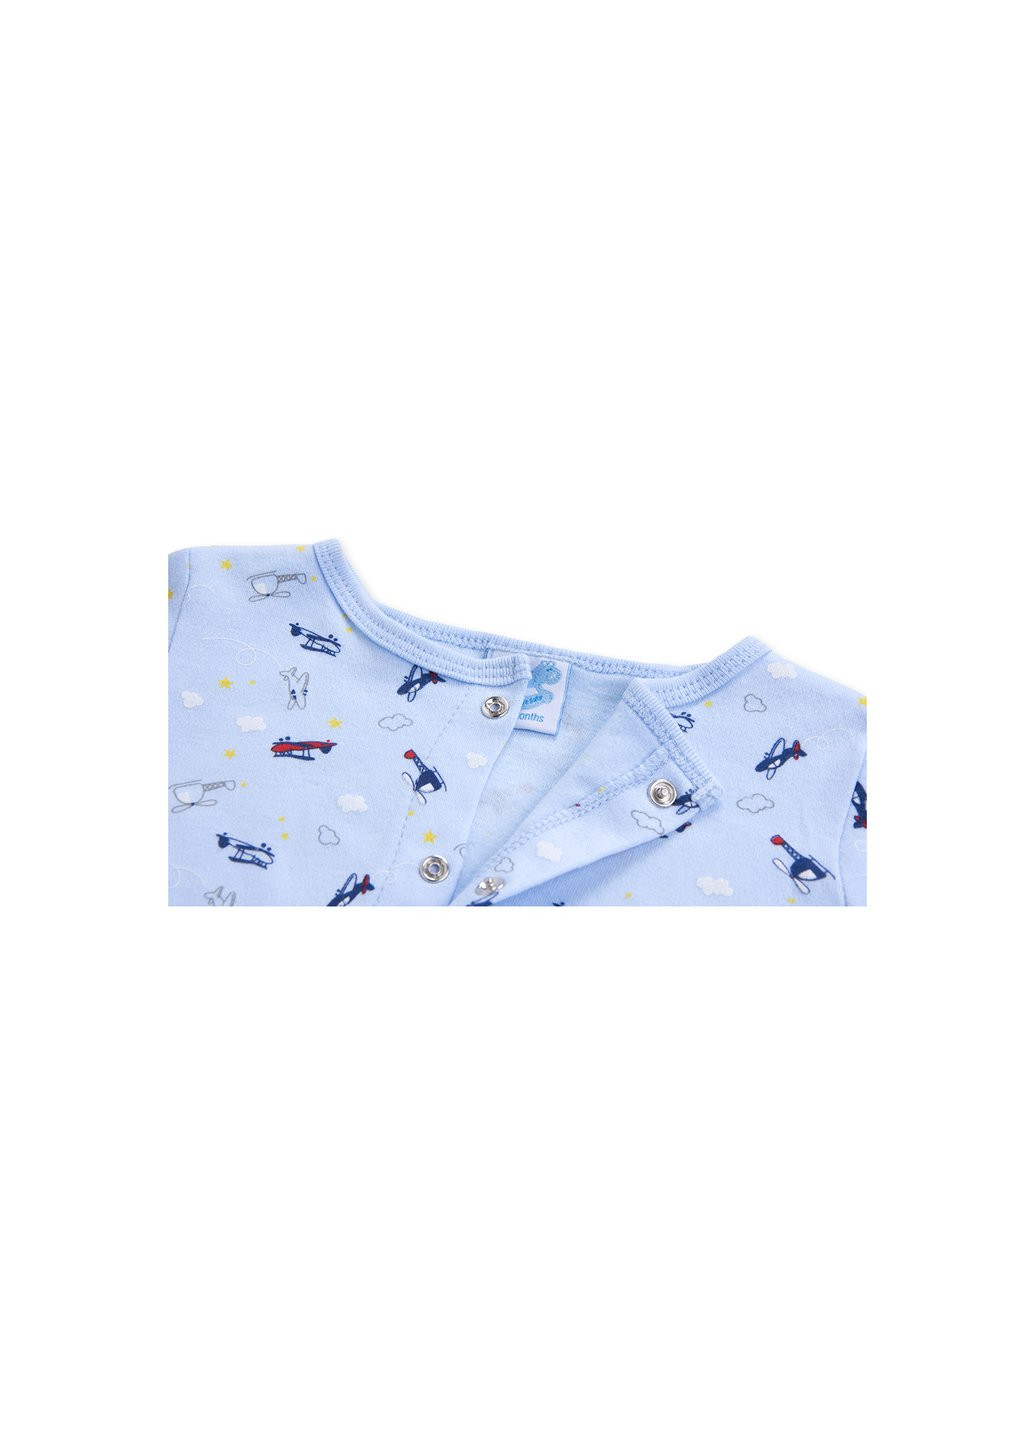 Комбинированный демисезонный набор детской одежды для мальчиков :человечек, штанишки, кофточка и шапочка (f7763.b.9-12) Luvena Fortuna